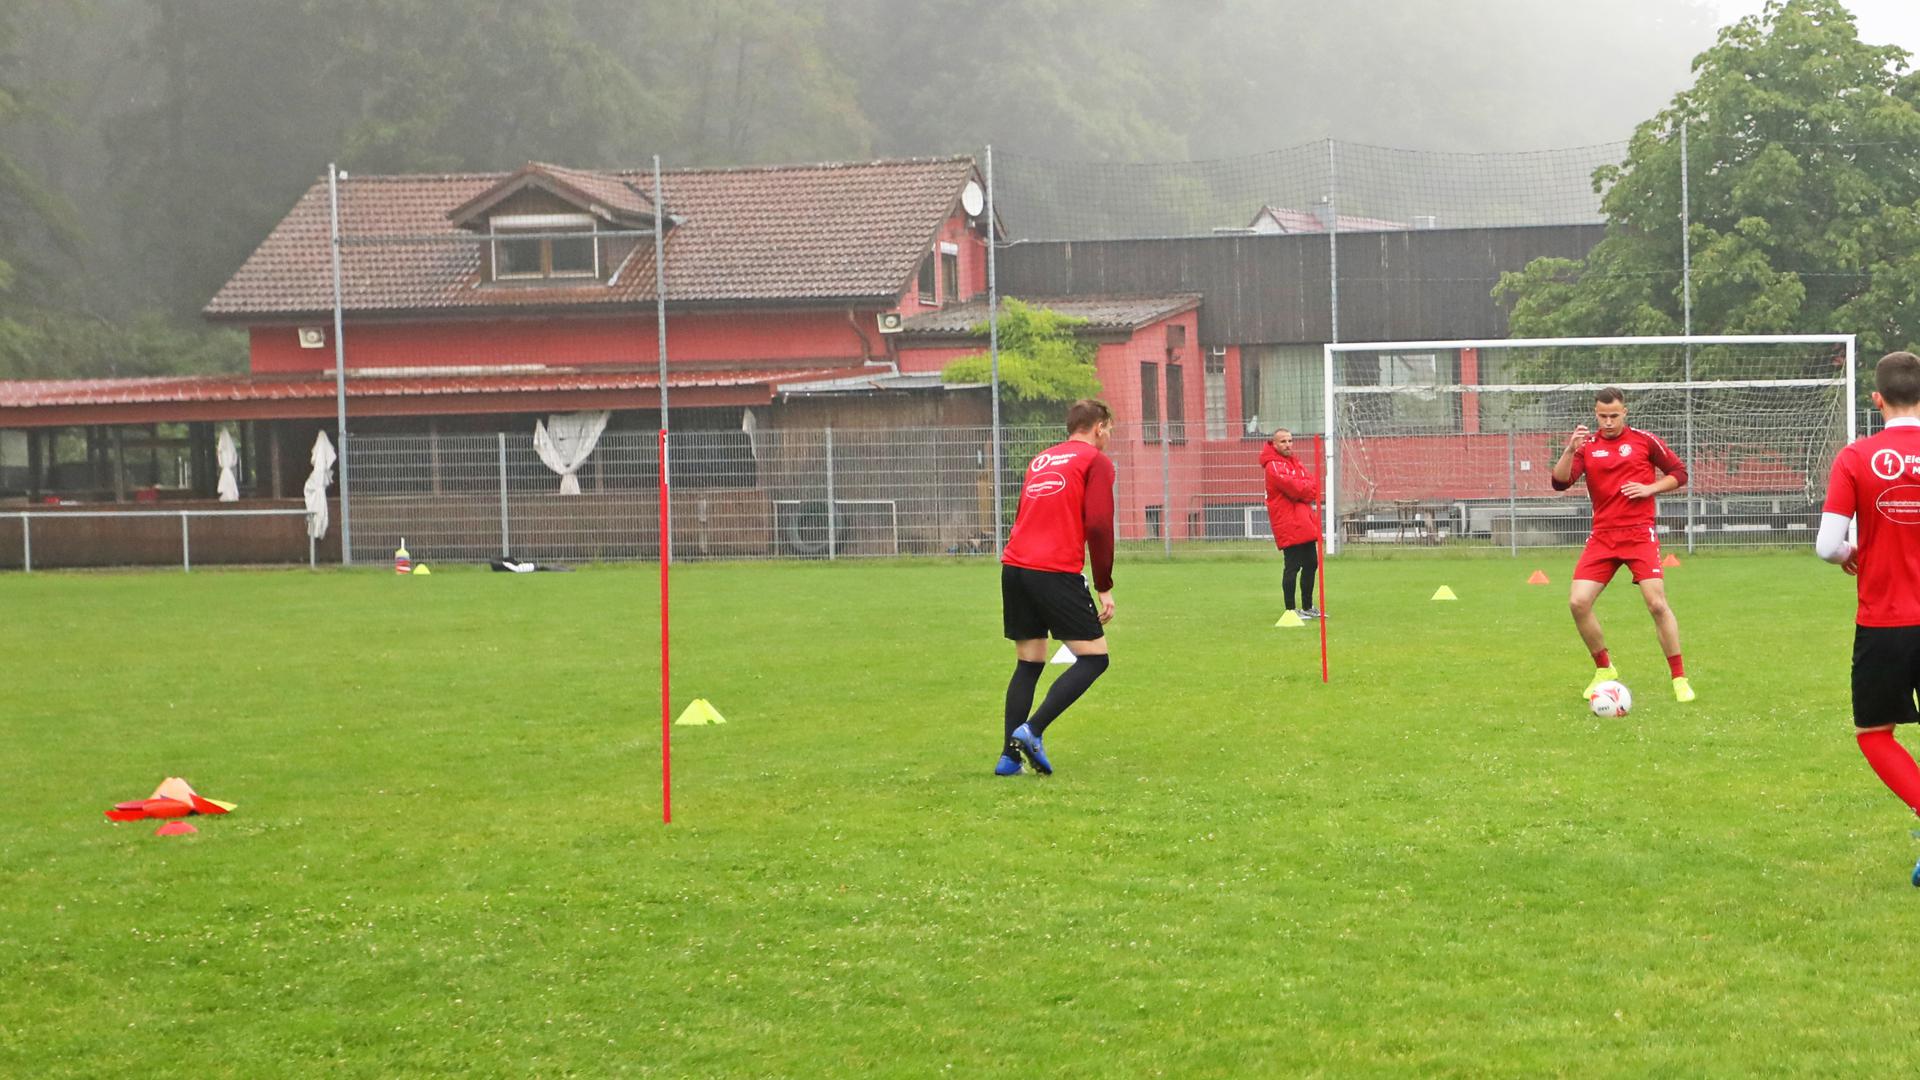 Im Vordergrund spielen mehrere junge Männer Fußball auf einem grünen Rasenplatz, dahinter ragt das Vereinsheim auf.